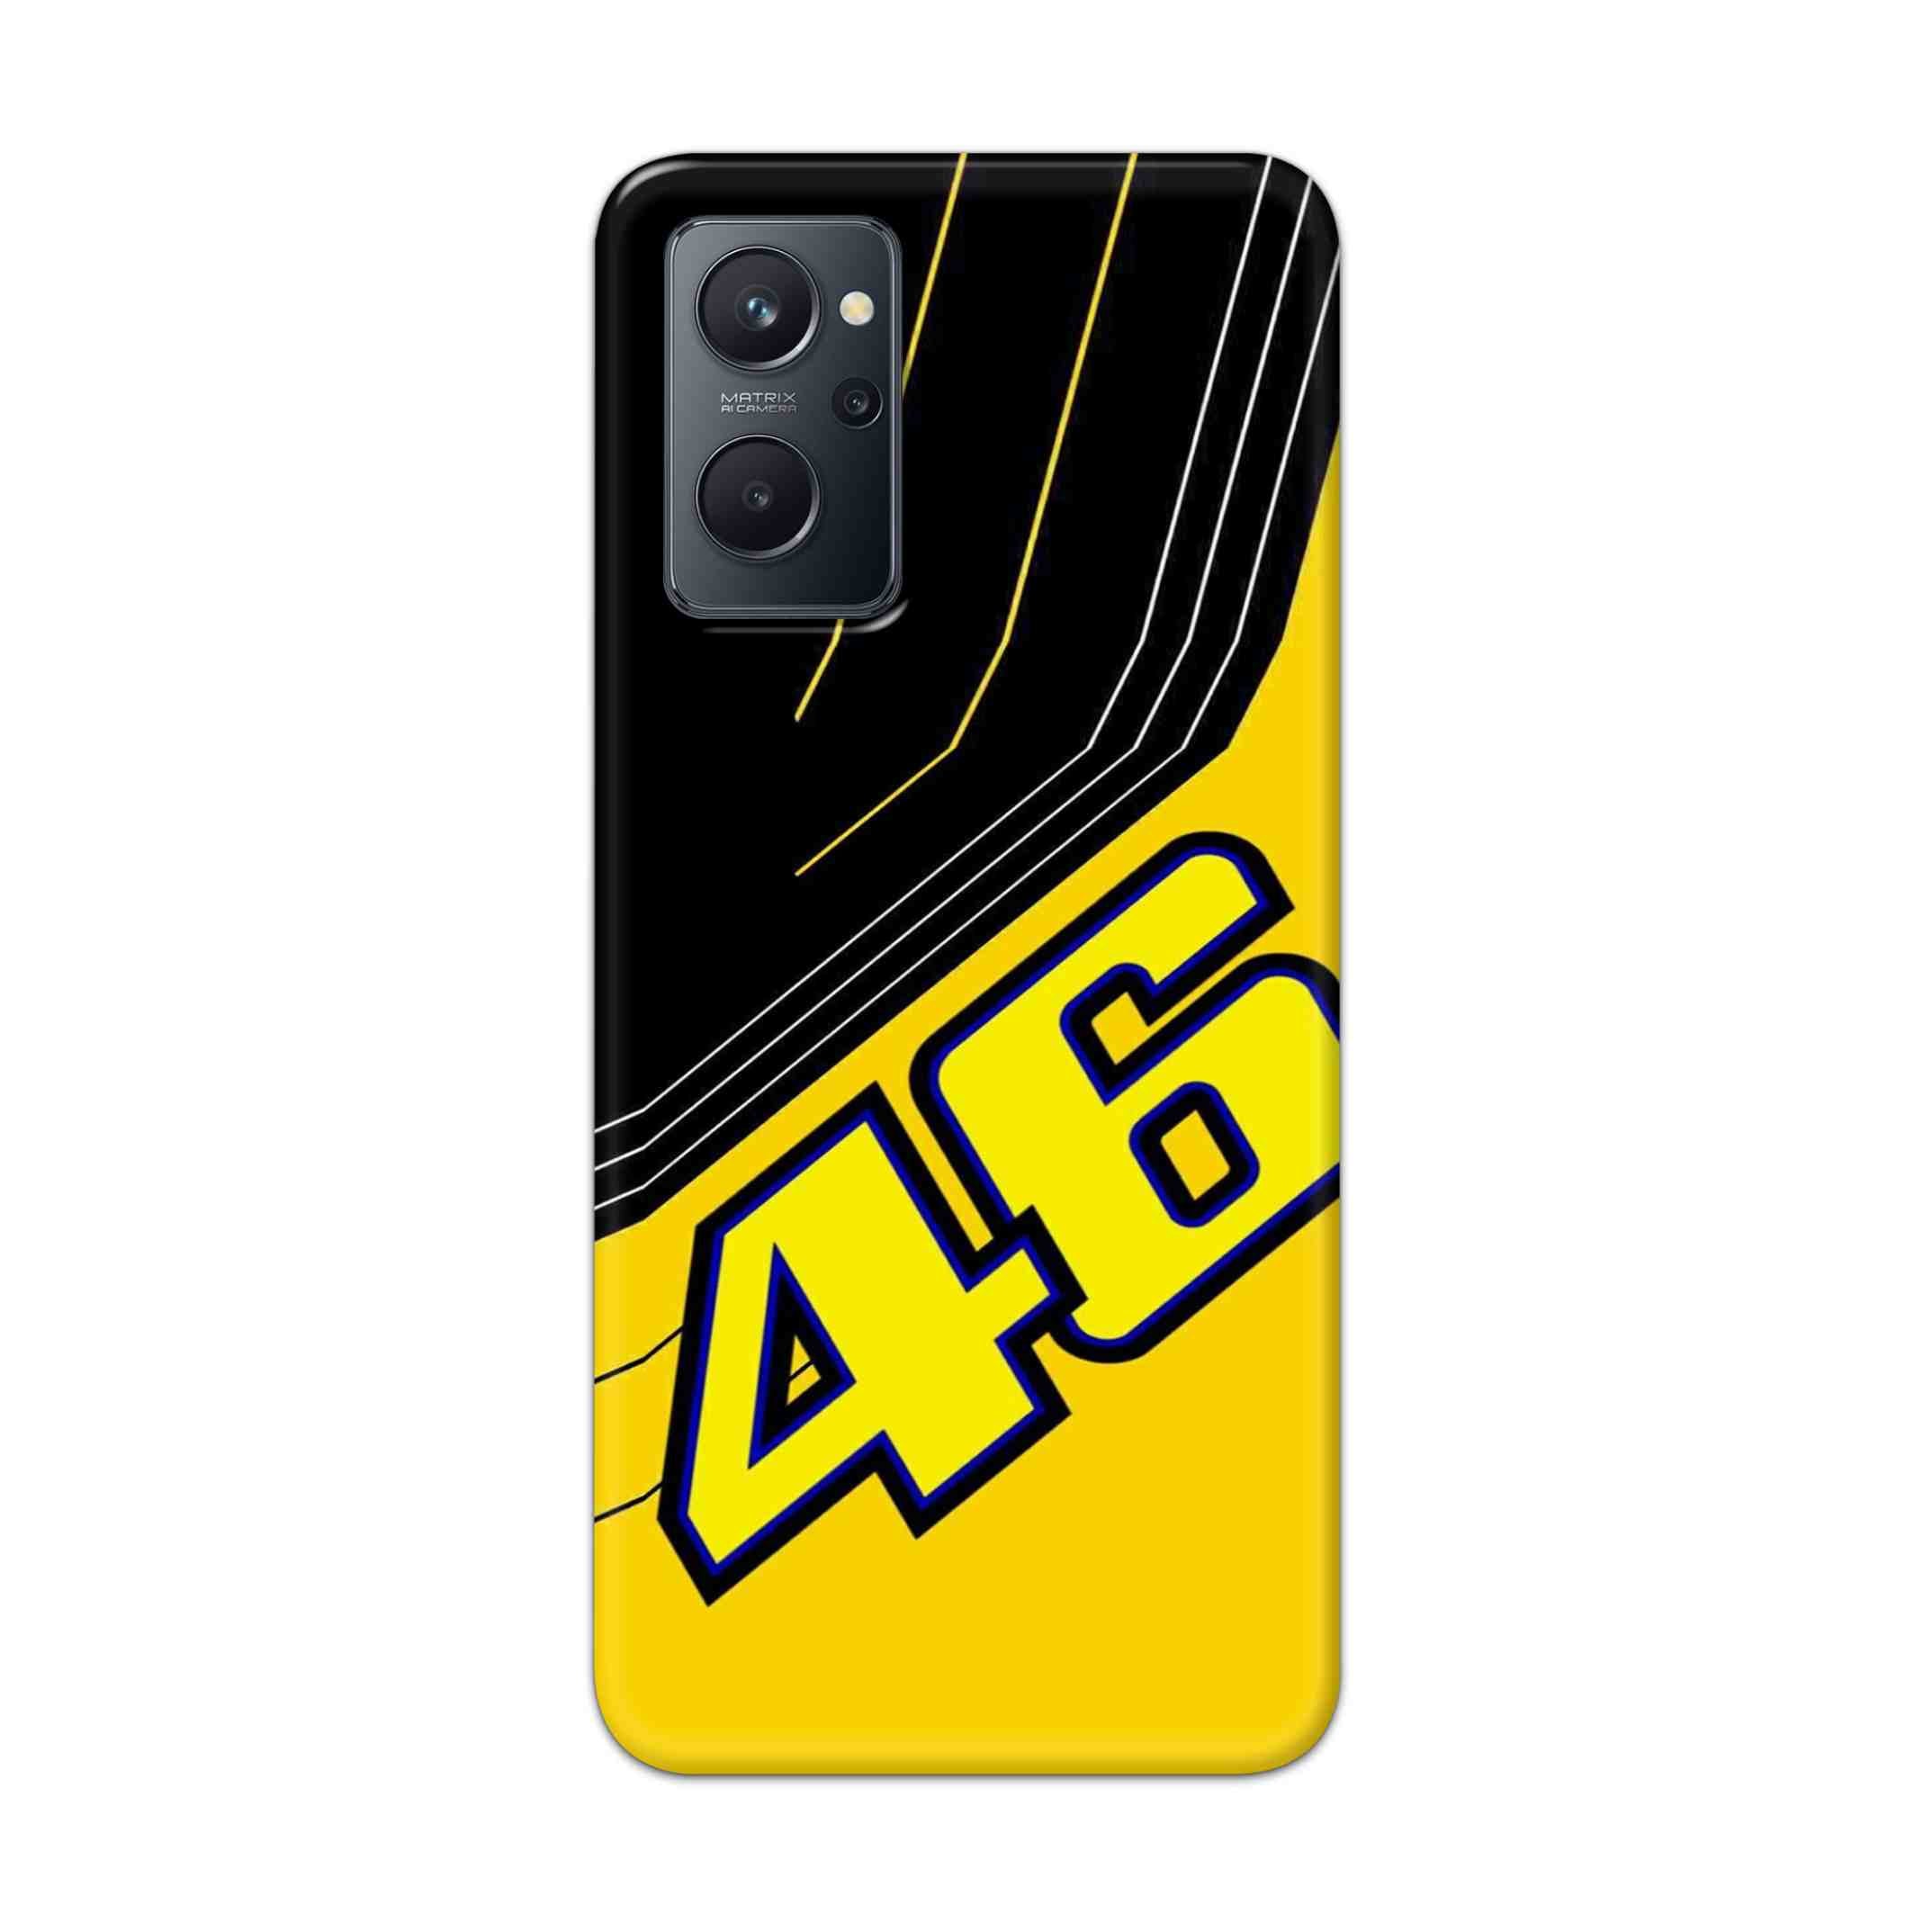 Buy 46 Hard Back Mobile Phone Case Cover For Realme 9i Online